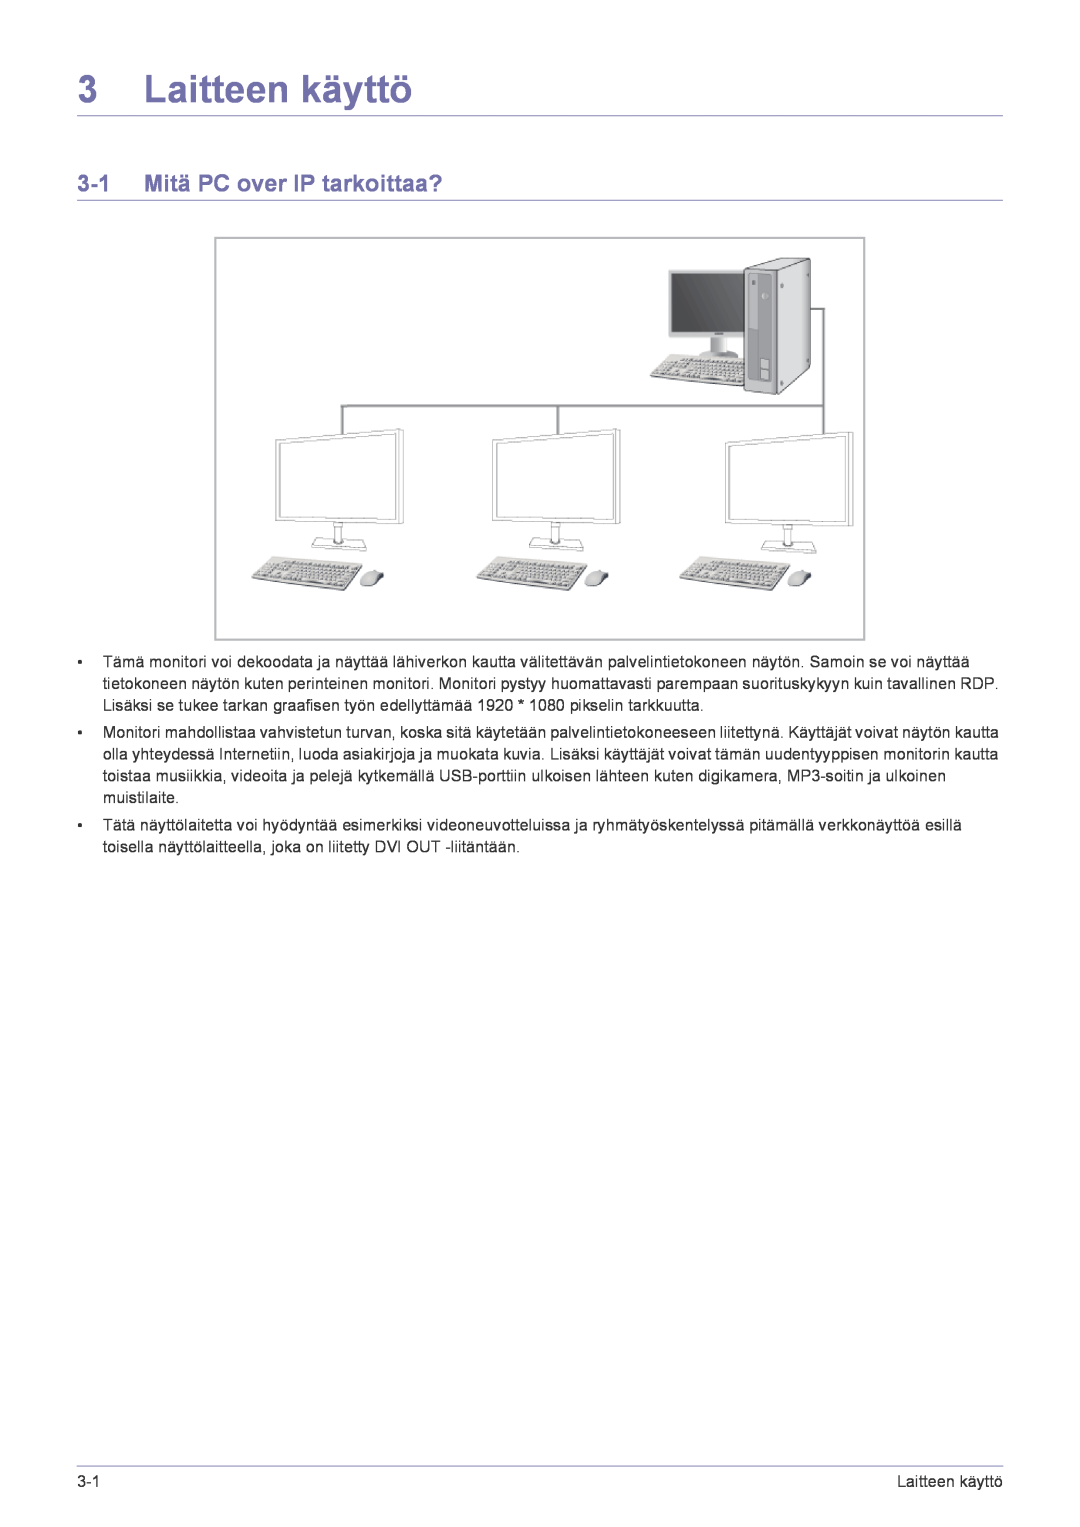 Samsung LF22NPBHBNP/EN manual Laitteen käyttö, 3-1 Mitä PC over IP tarkoittaa? 